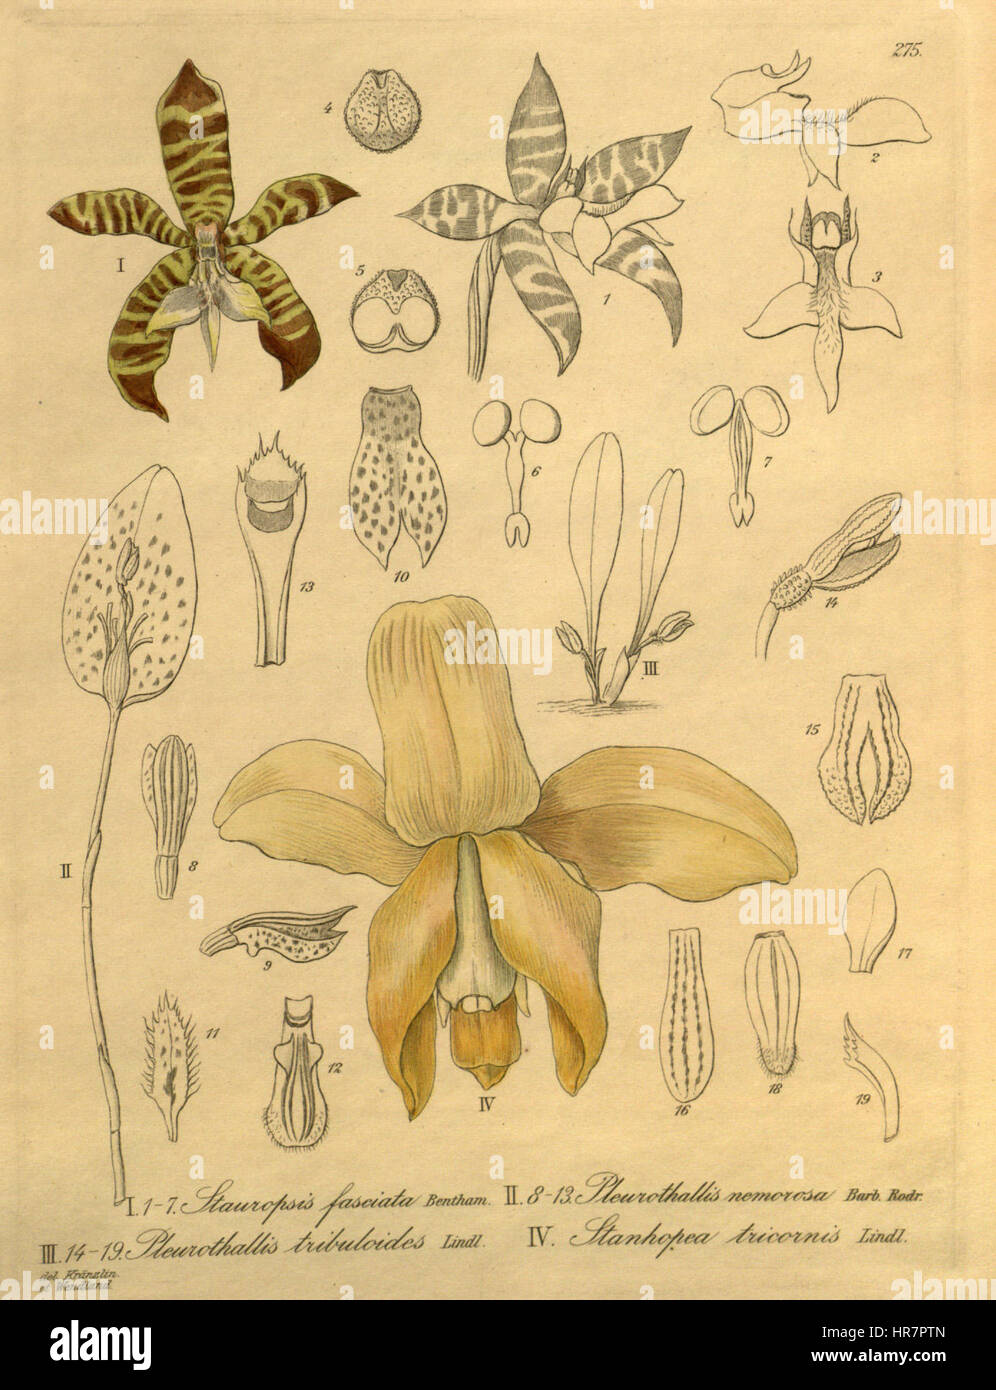 Stauropsis fasciata - Pleurothallis nemorosa - Pl. tribuloides - Stanhopea tricornis - Xenia 3- 275 Stock Photo